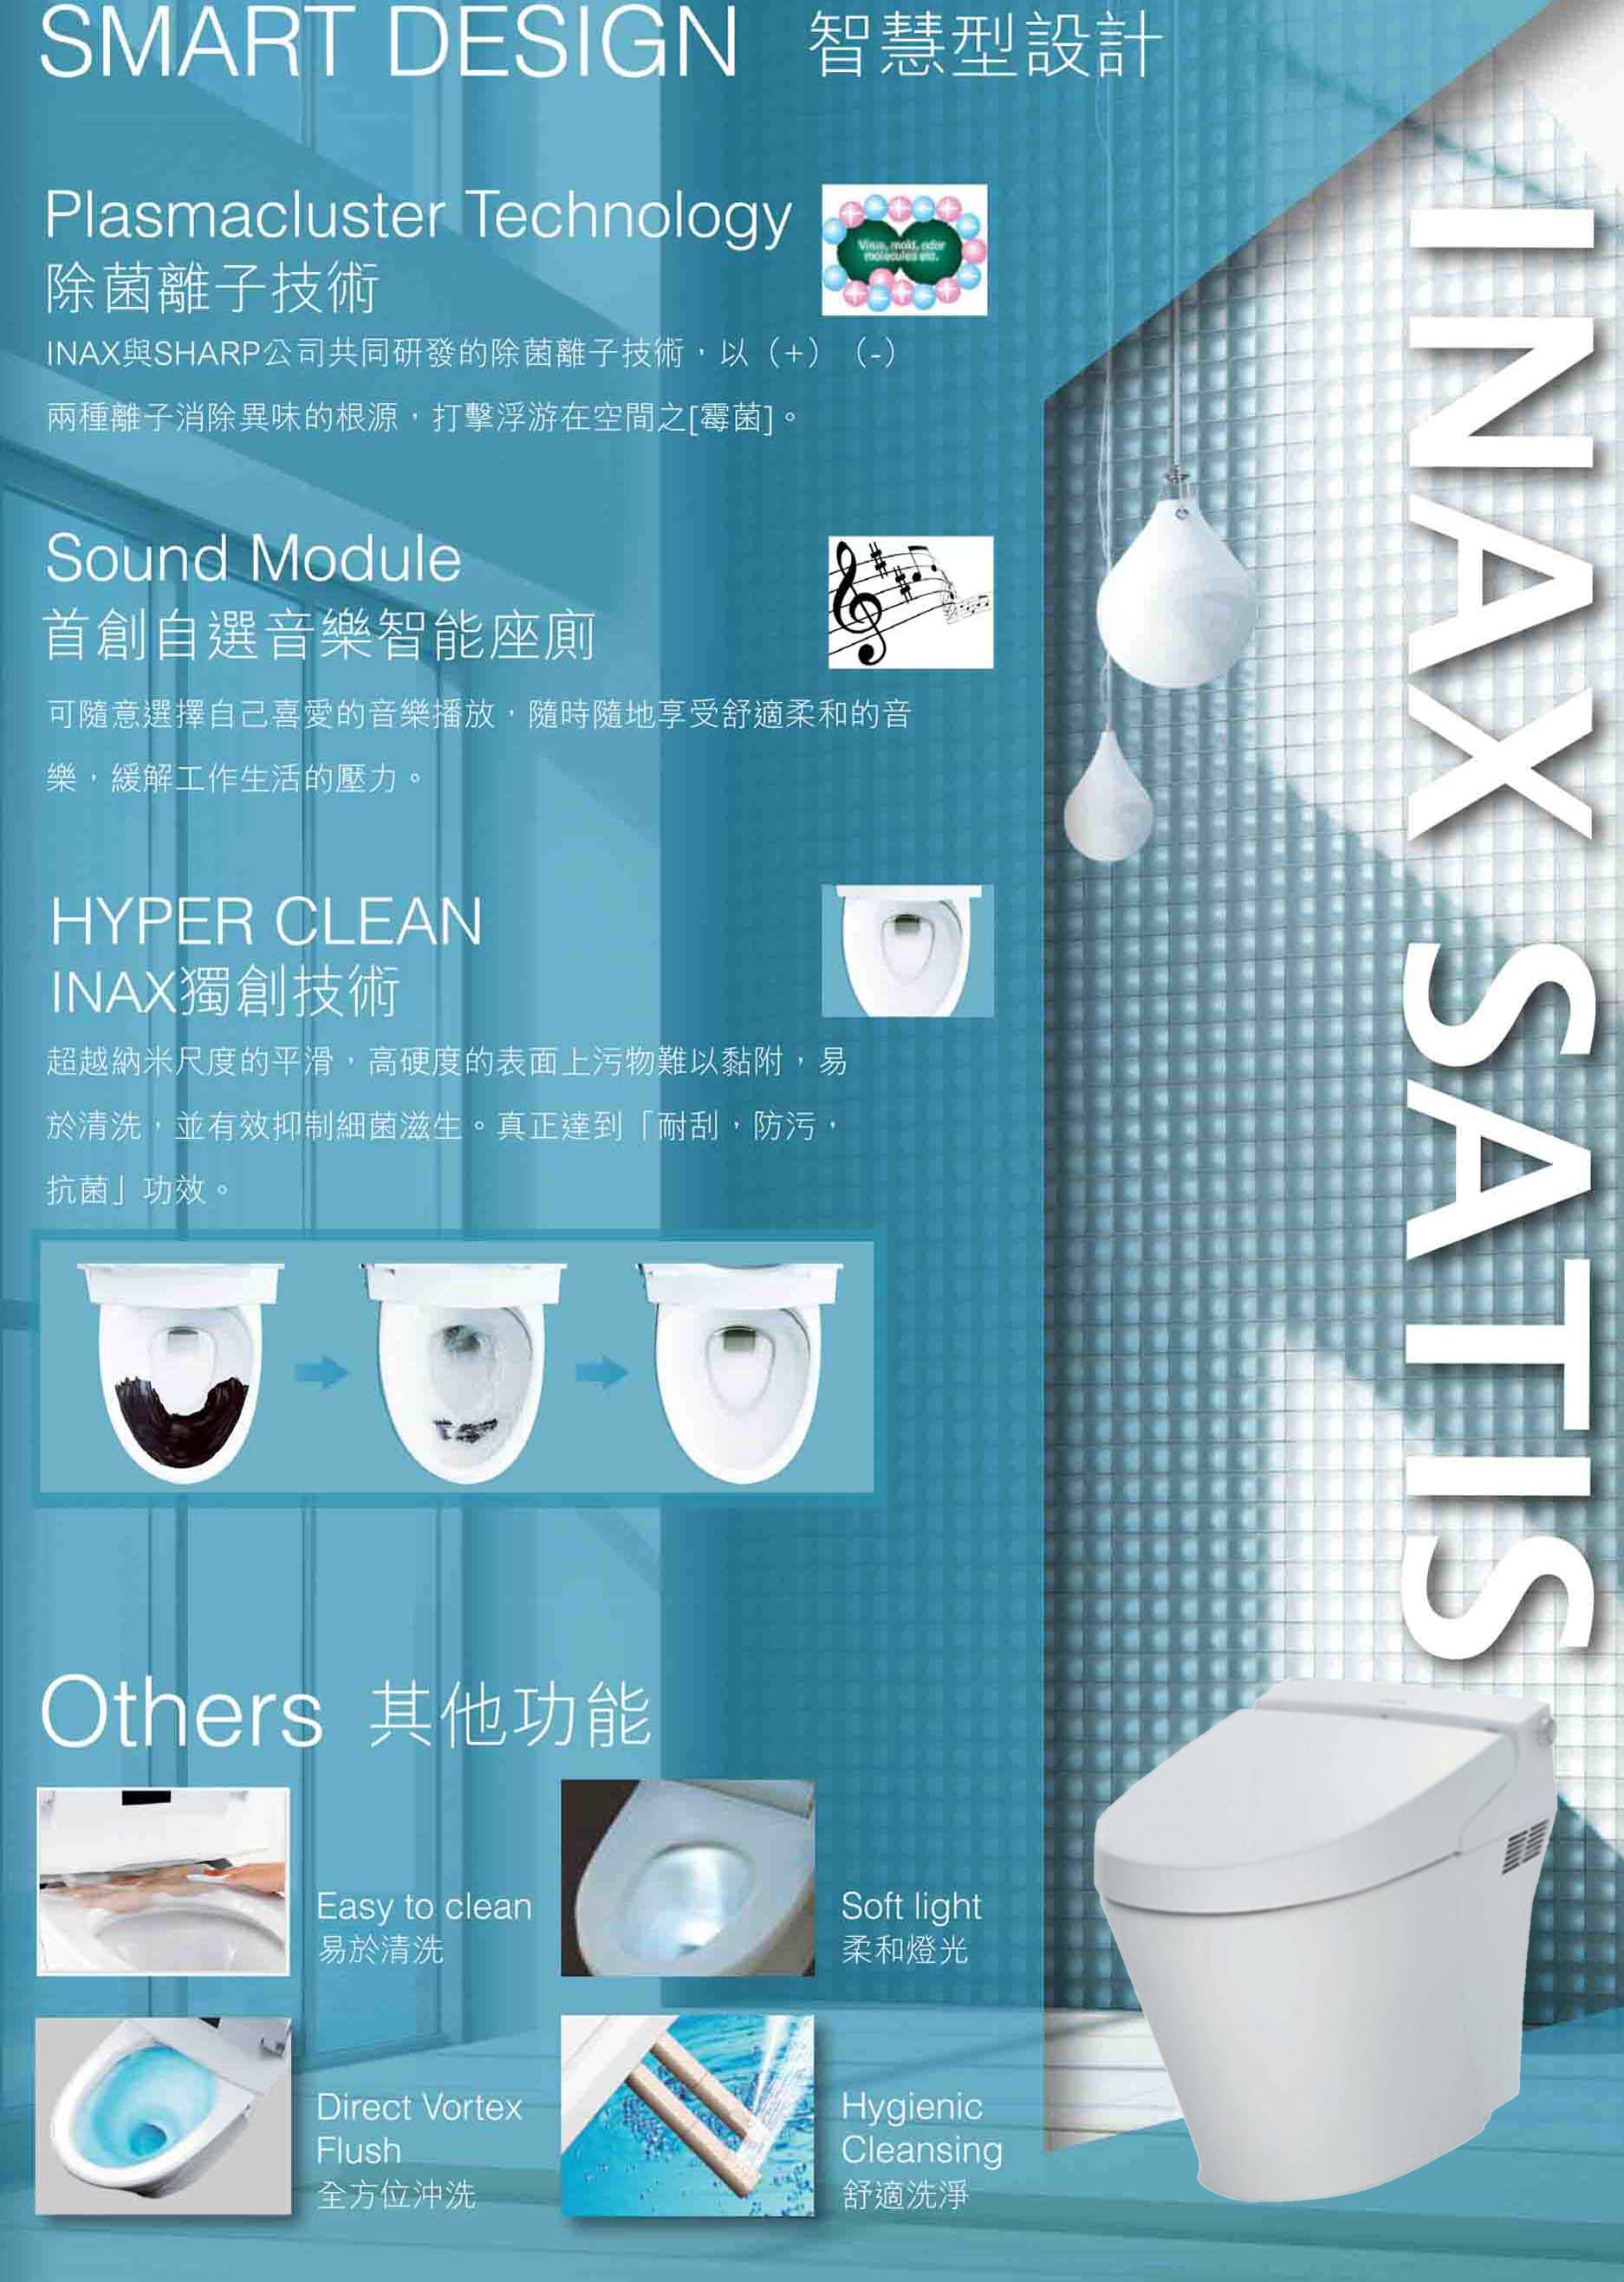 Inax IN-YBC-S20P-W-BW1 Satis 120mm 低咀智能座廁 + Satis 智能廁板連配件 (IN-DV-S618-VHWBF-BW1)